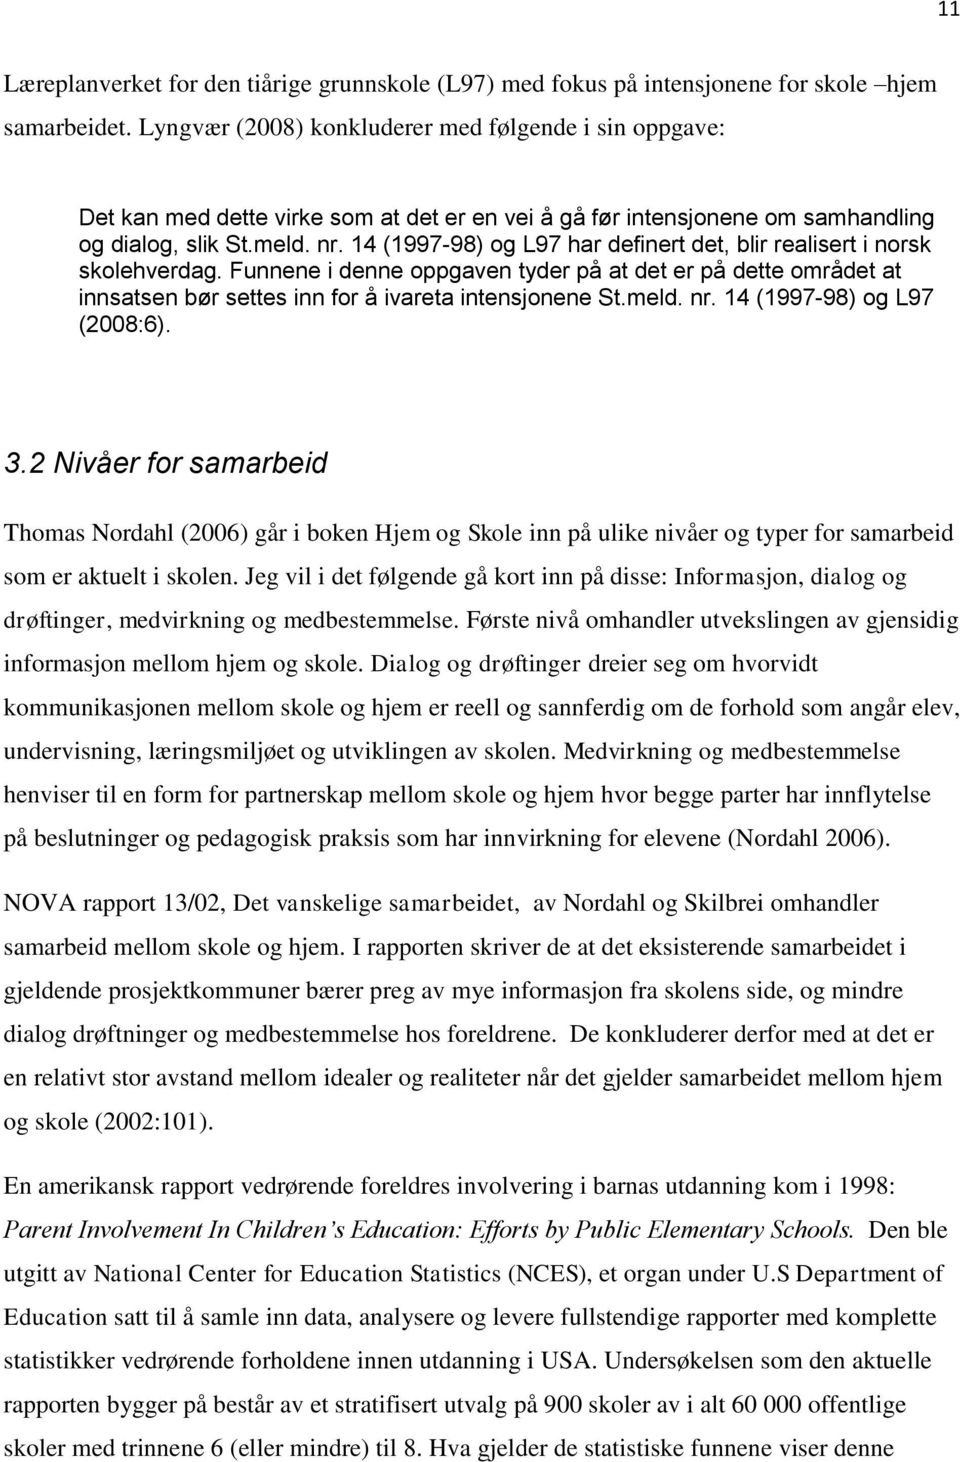 14 (1997-98) og L97 har definert det, blir realisert i norsk skolehverdag. Funnene i denne oppgaven tyder på at det er på dette området at innsatsen bør settes inn for å ivareta intensjonene St.meld.